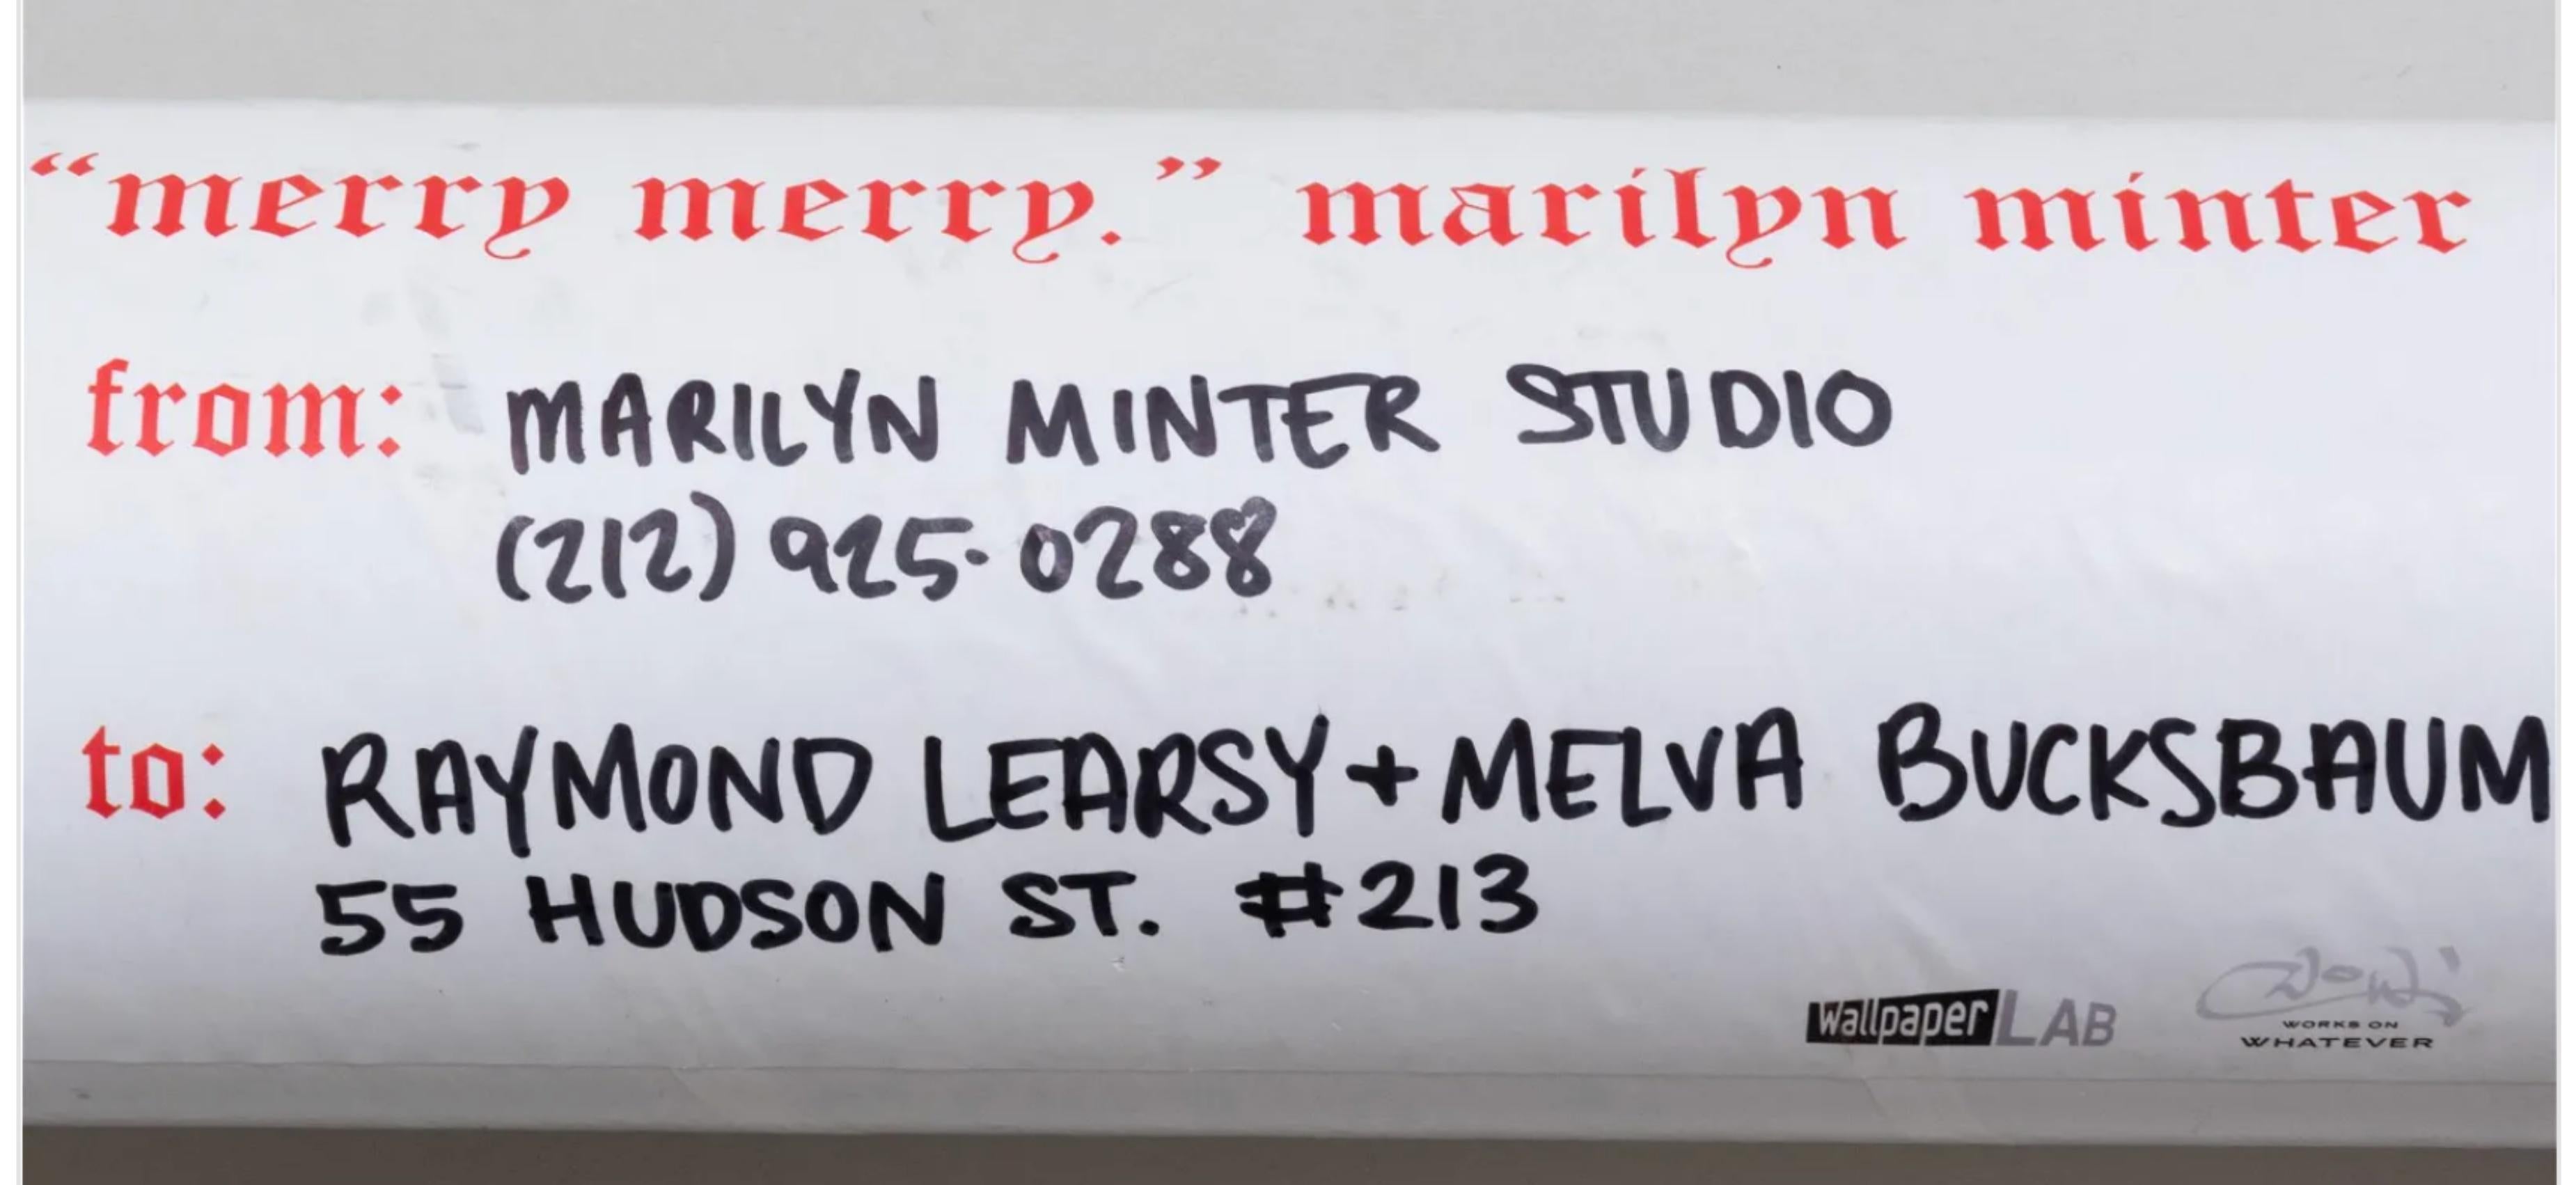 Marilyn Minter
Merry Merry : Grands autocollants de Noël en édition limitée, 2007
Une feuille surdimensionnée d'autocollants en vinyle découpé
La dimension totale de la feuille une fois ouverte est de 48 pouces x 72 pouces.
Livré dans un tube de 37